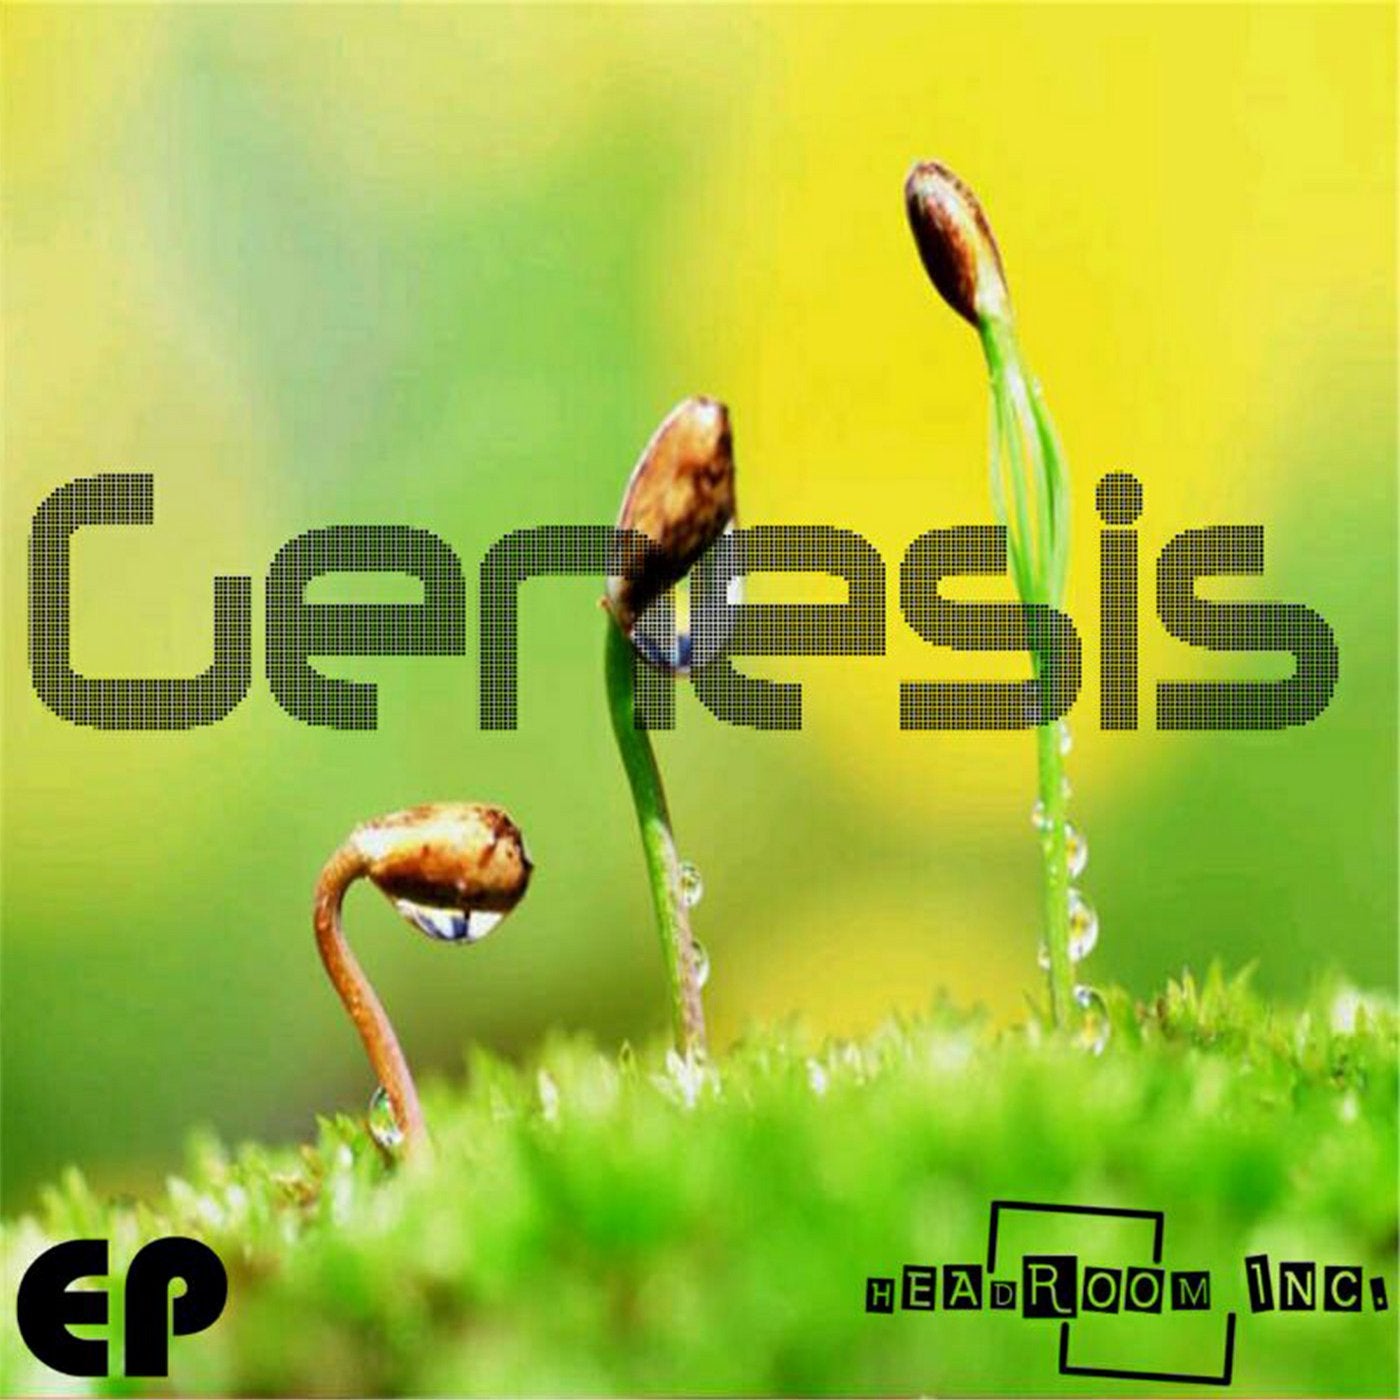 Genesis EP